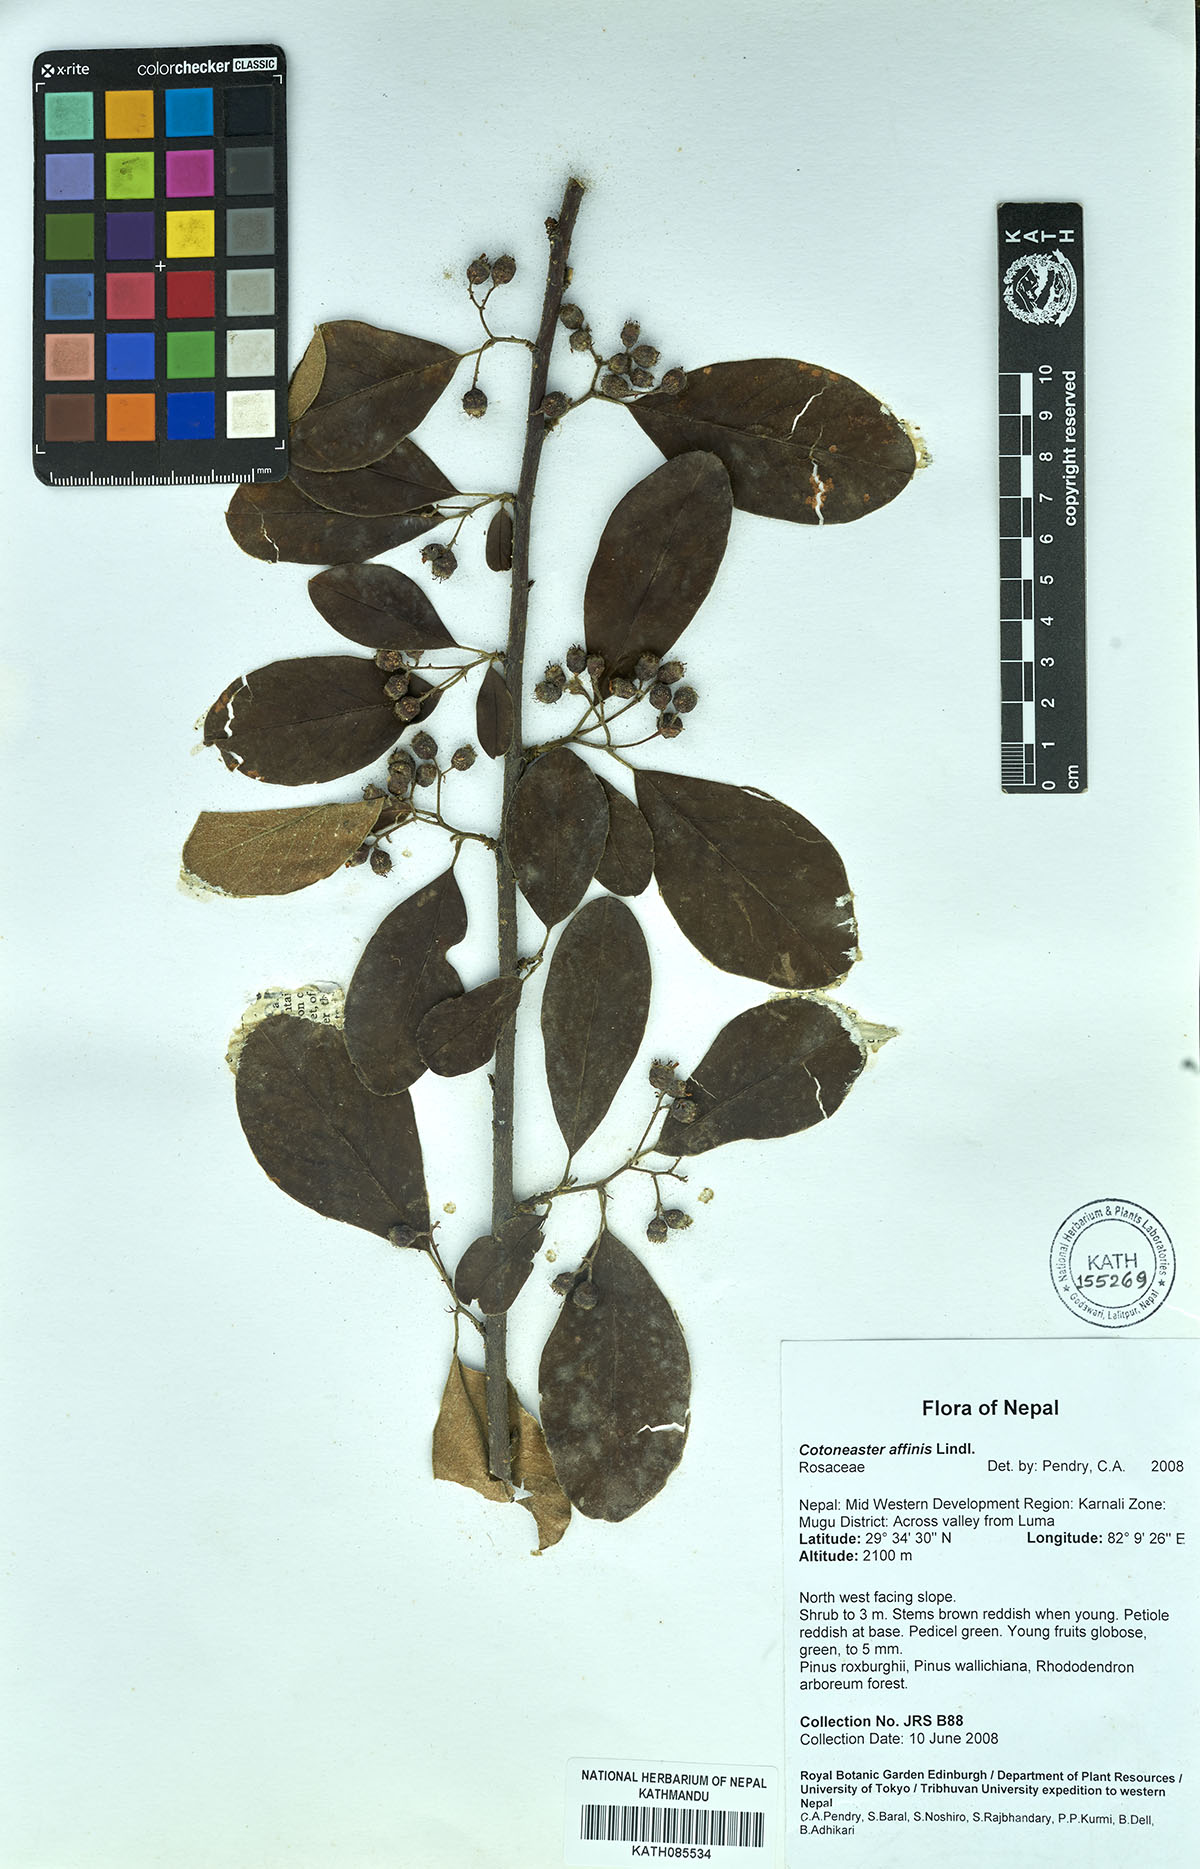 Cotoneaster affinis Lindl.